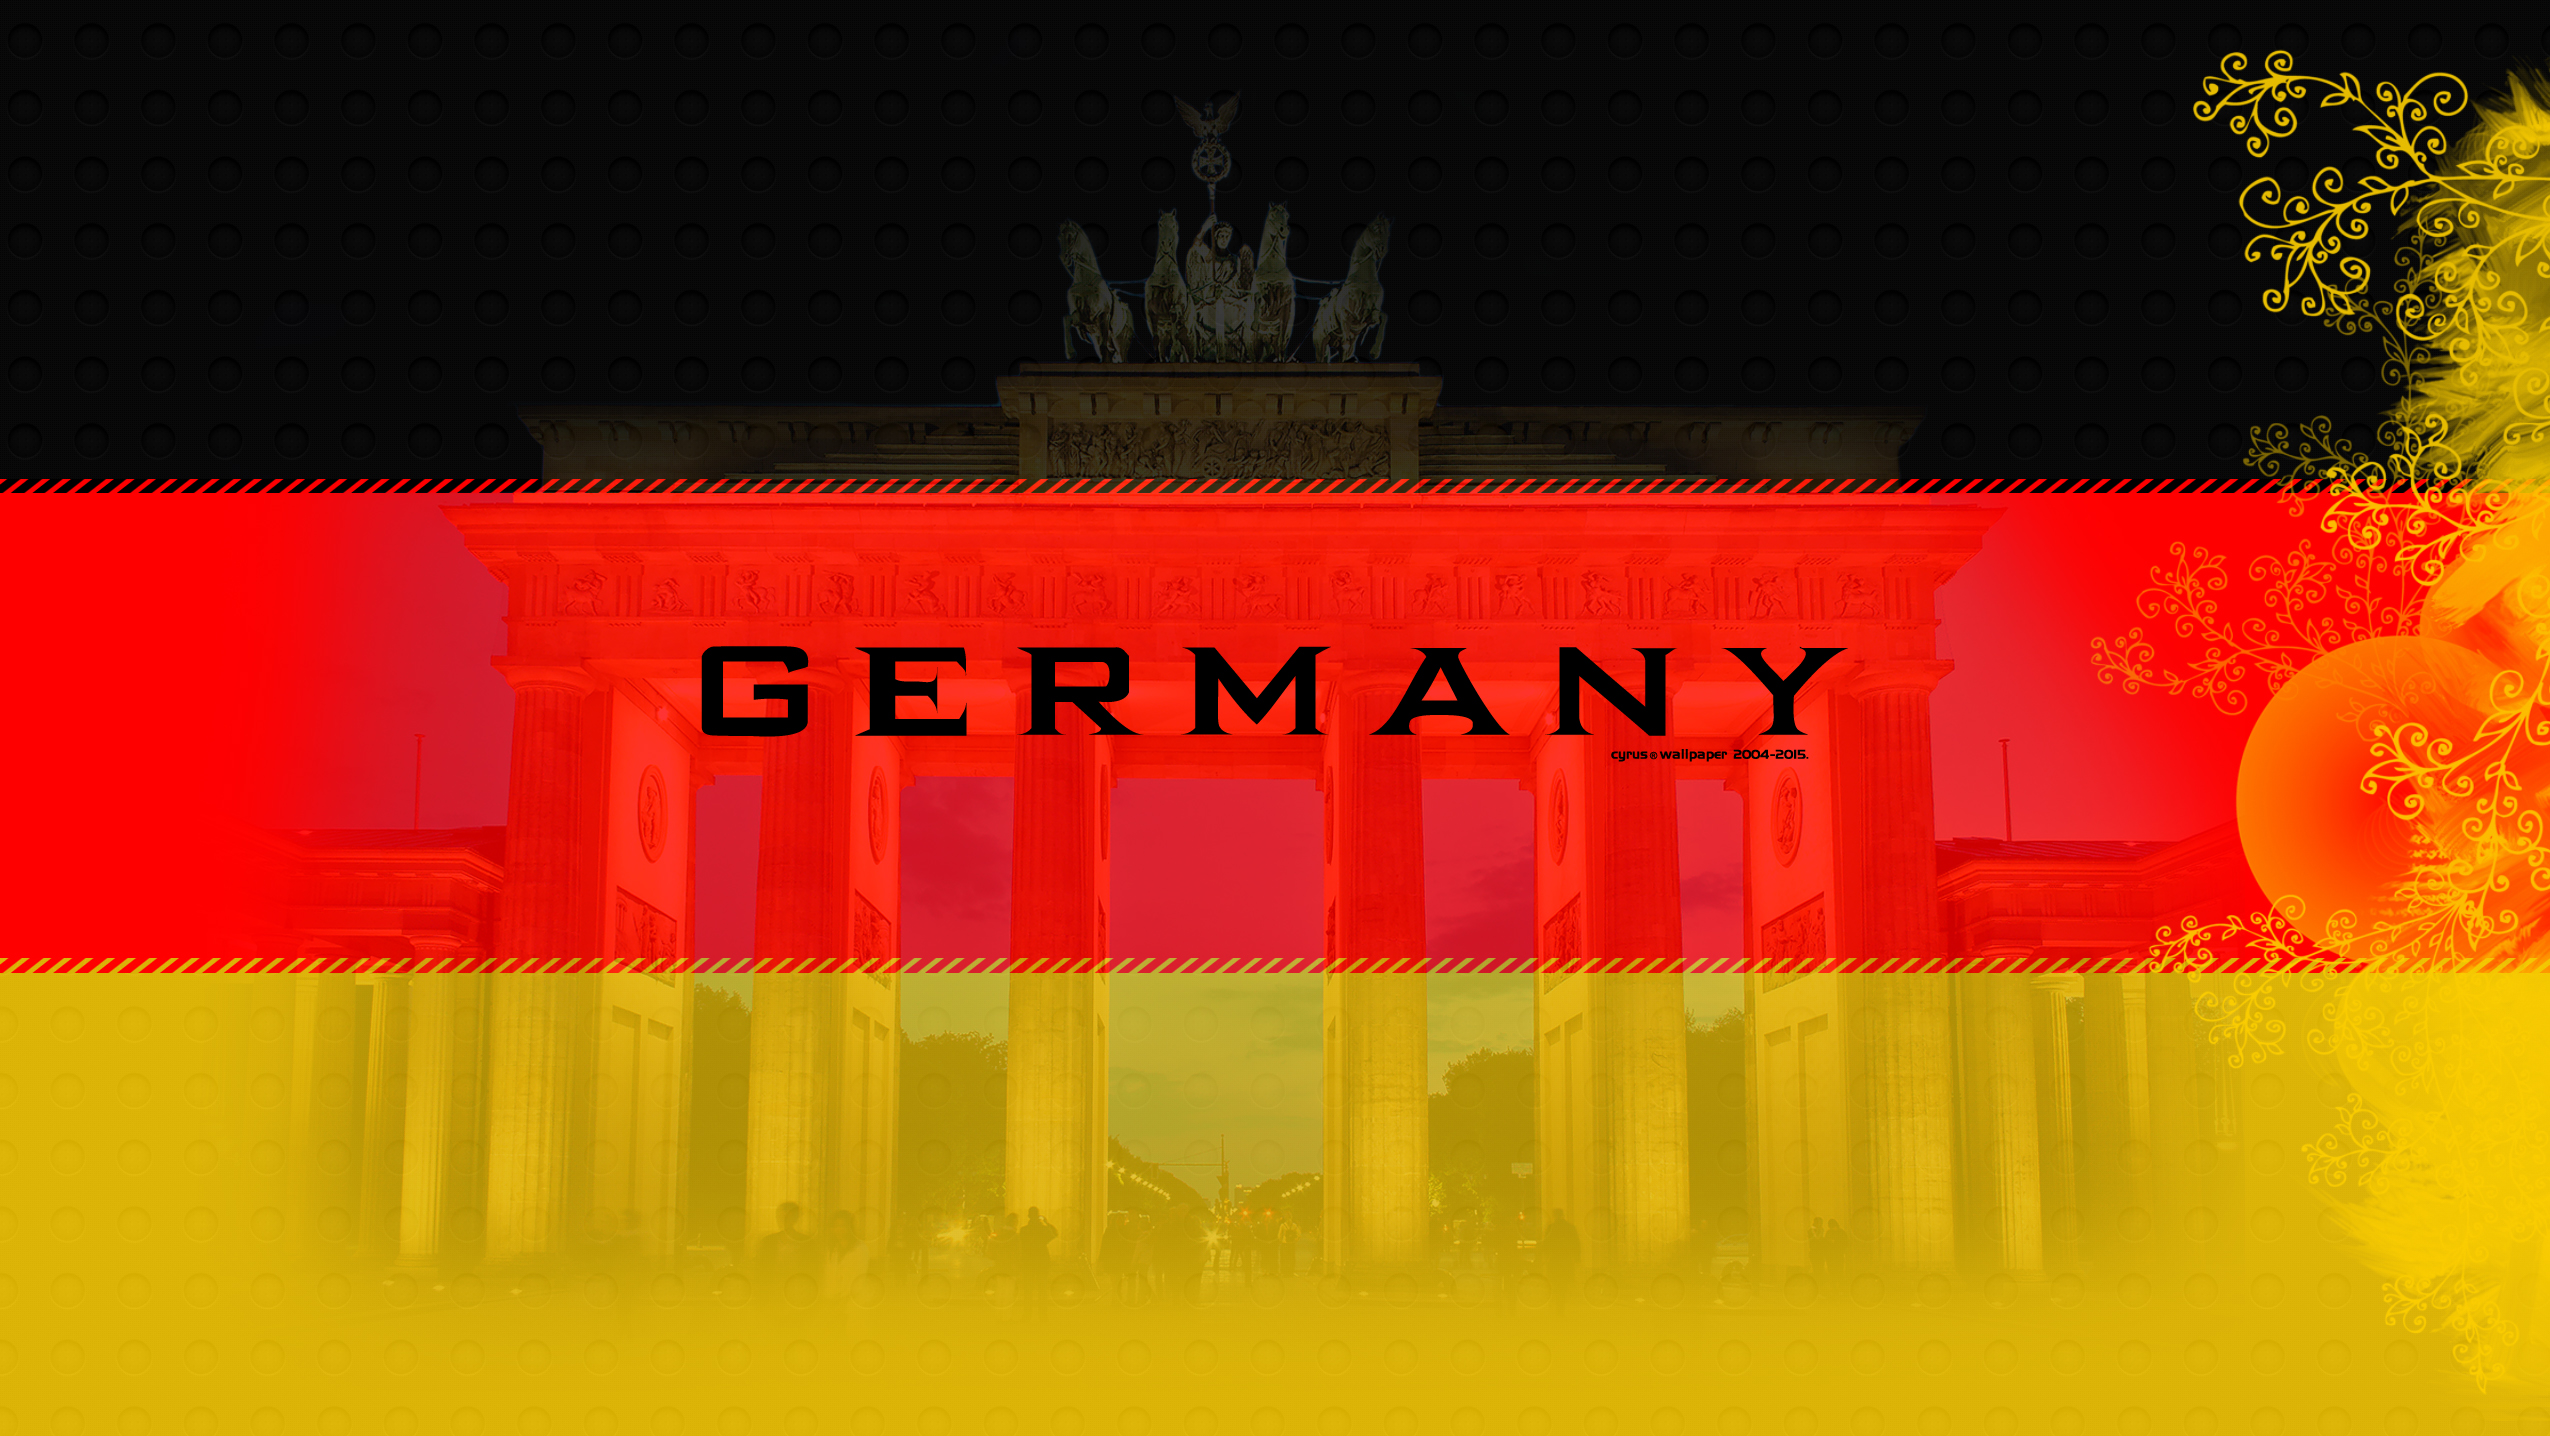 دانلود عکس پرچم کشور آلمان